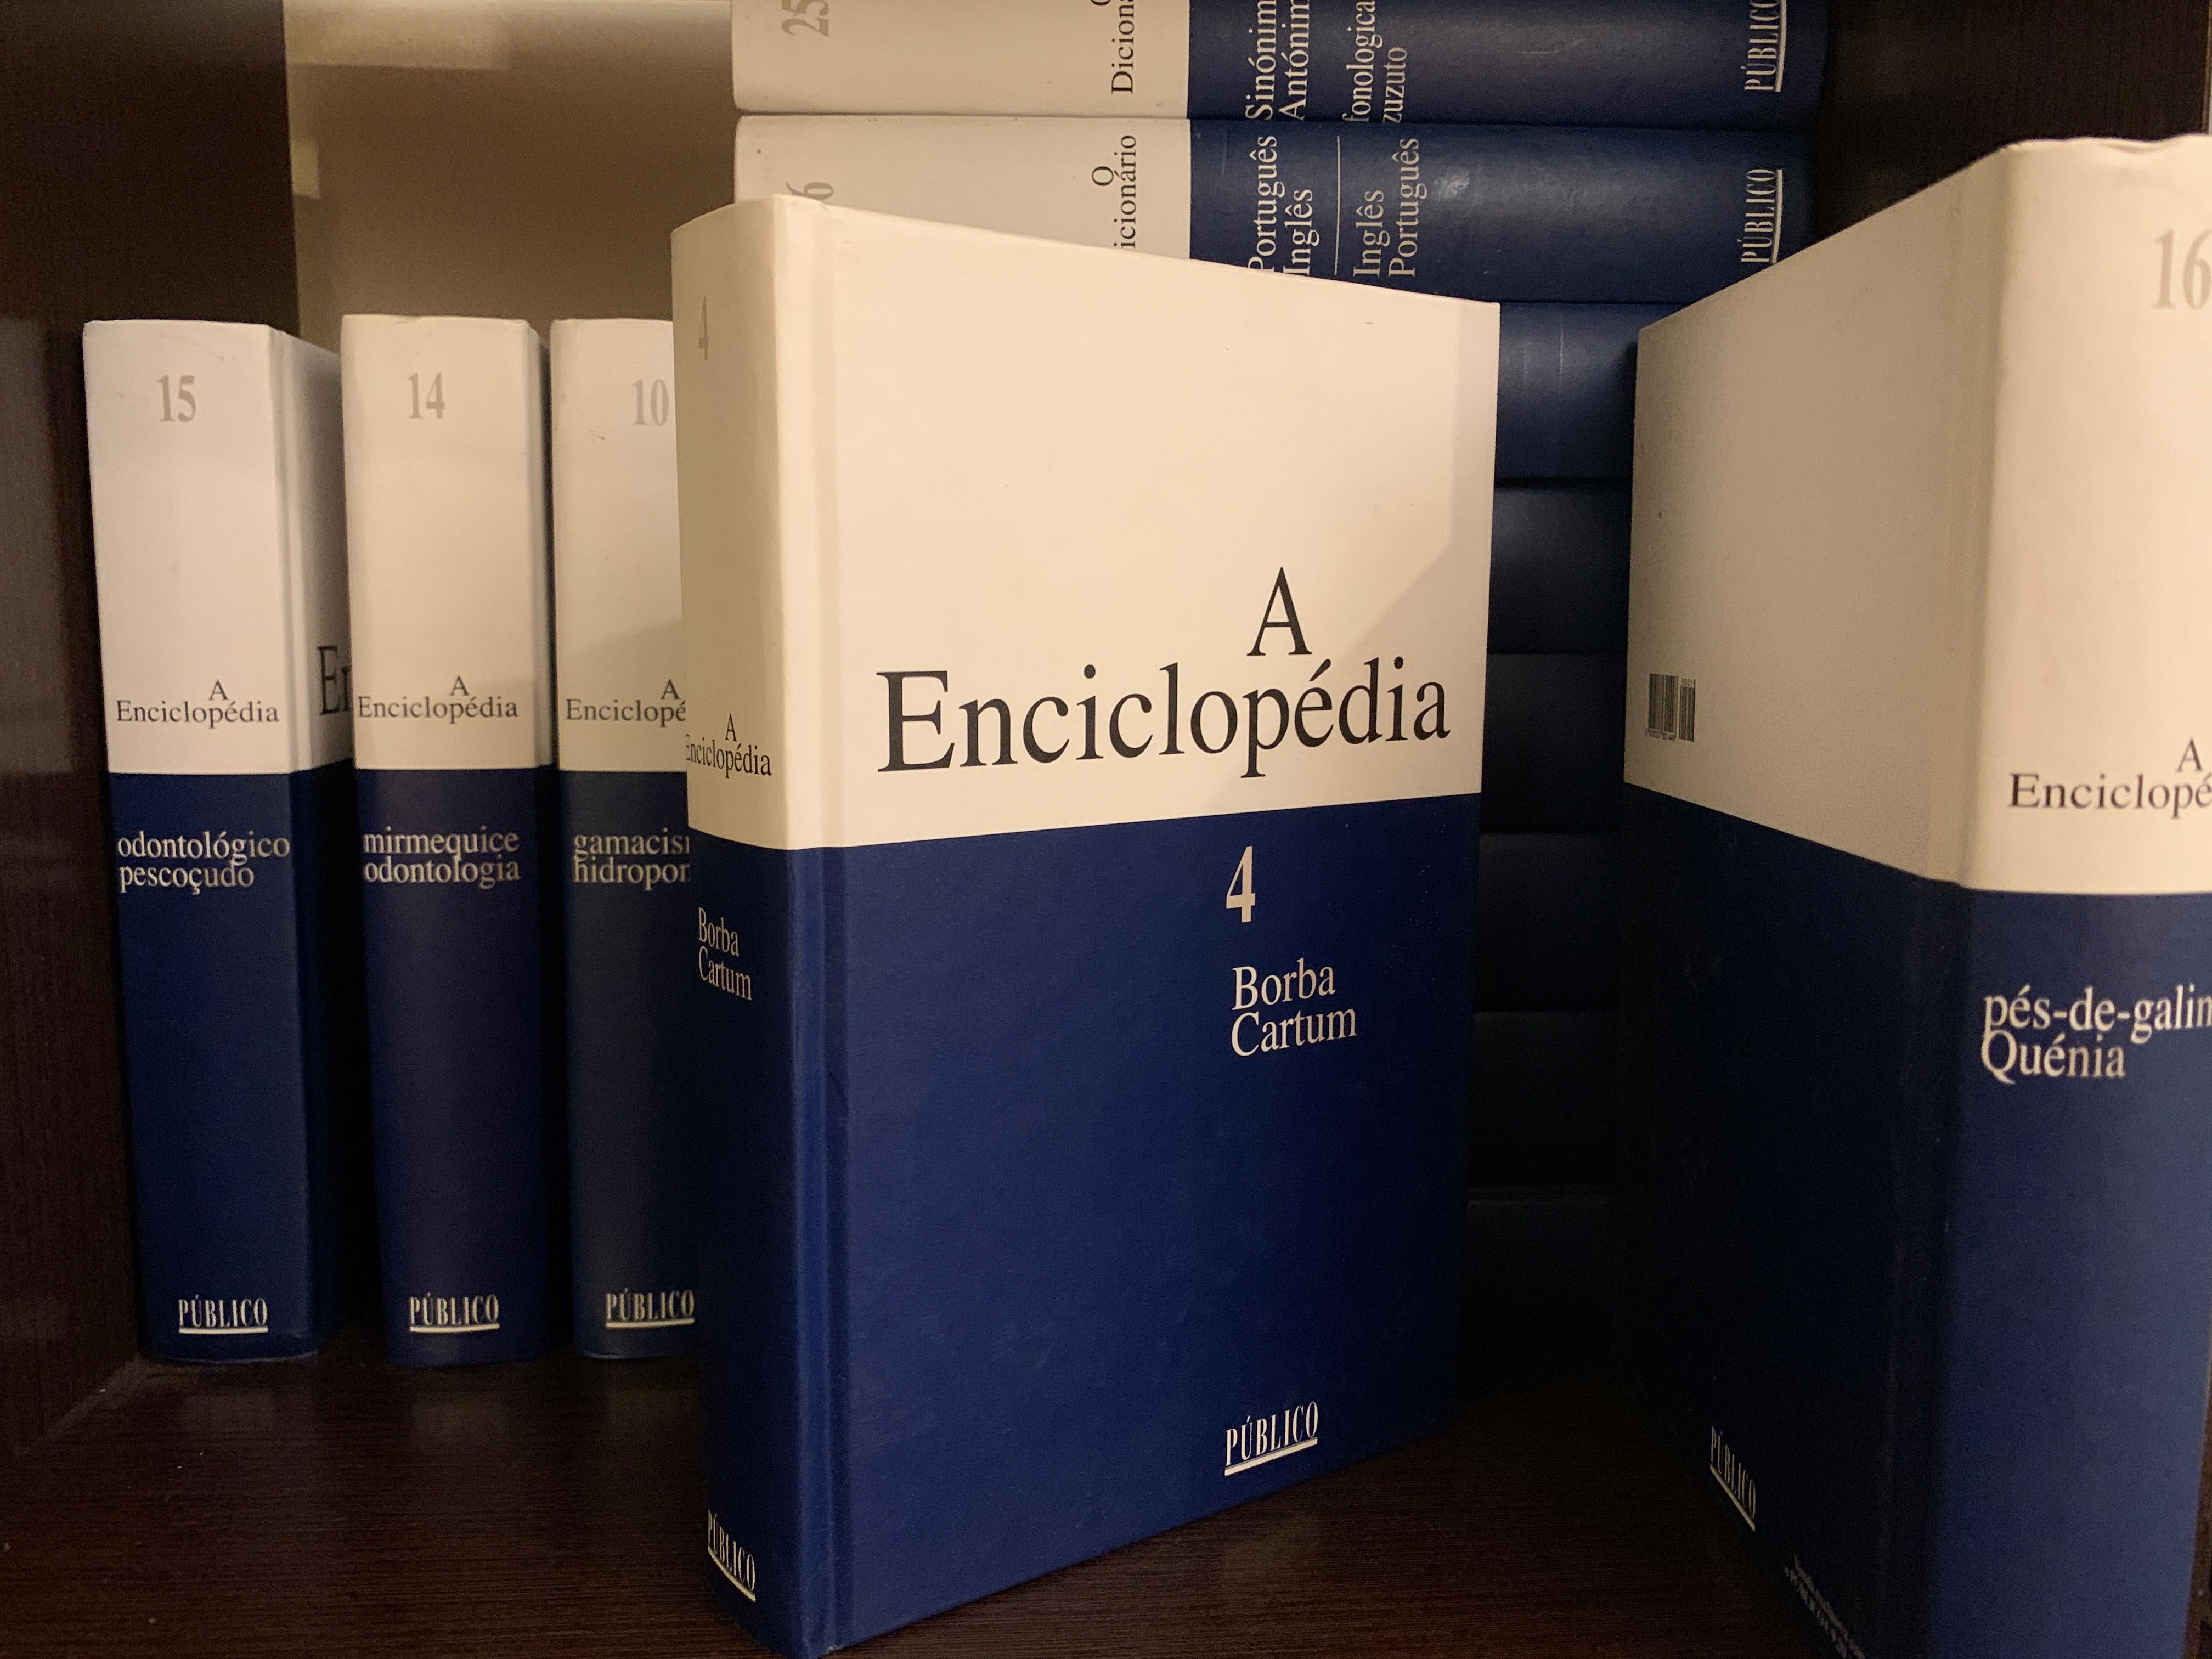 Enciclopédia Completa "a Enciclopédia"